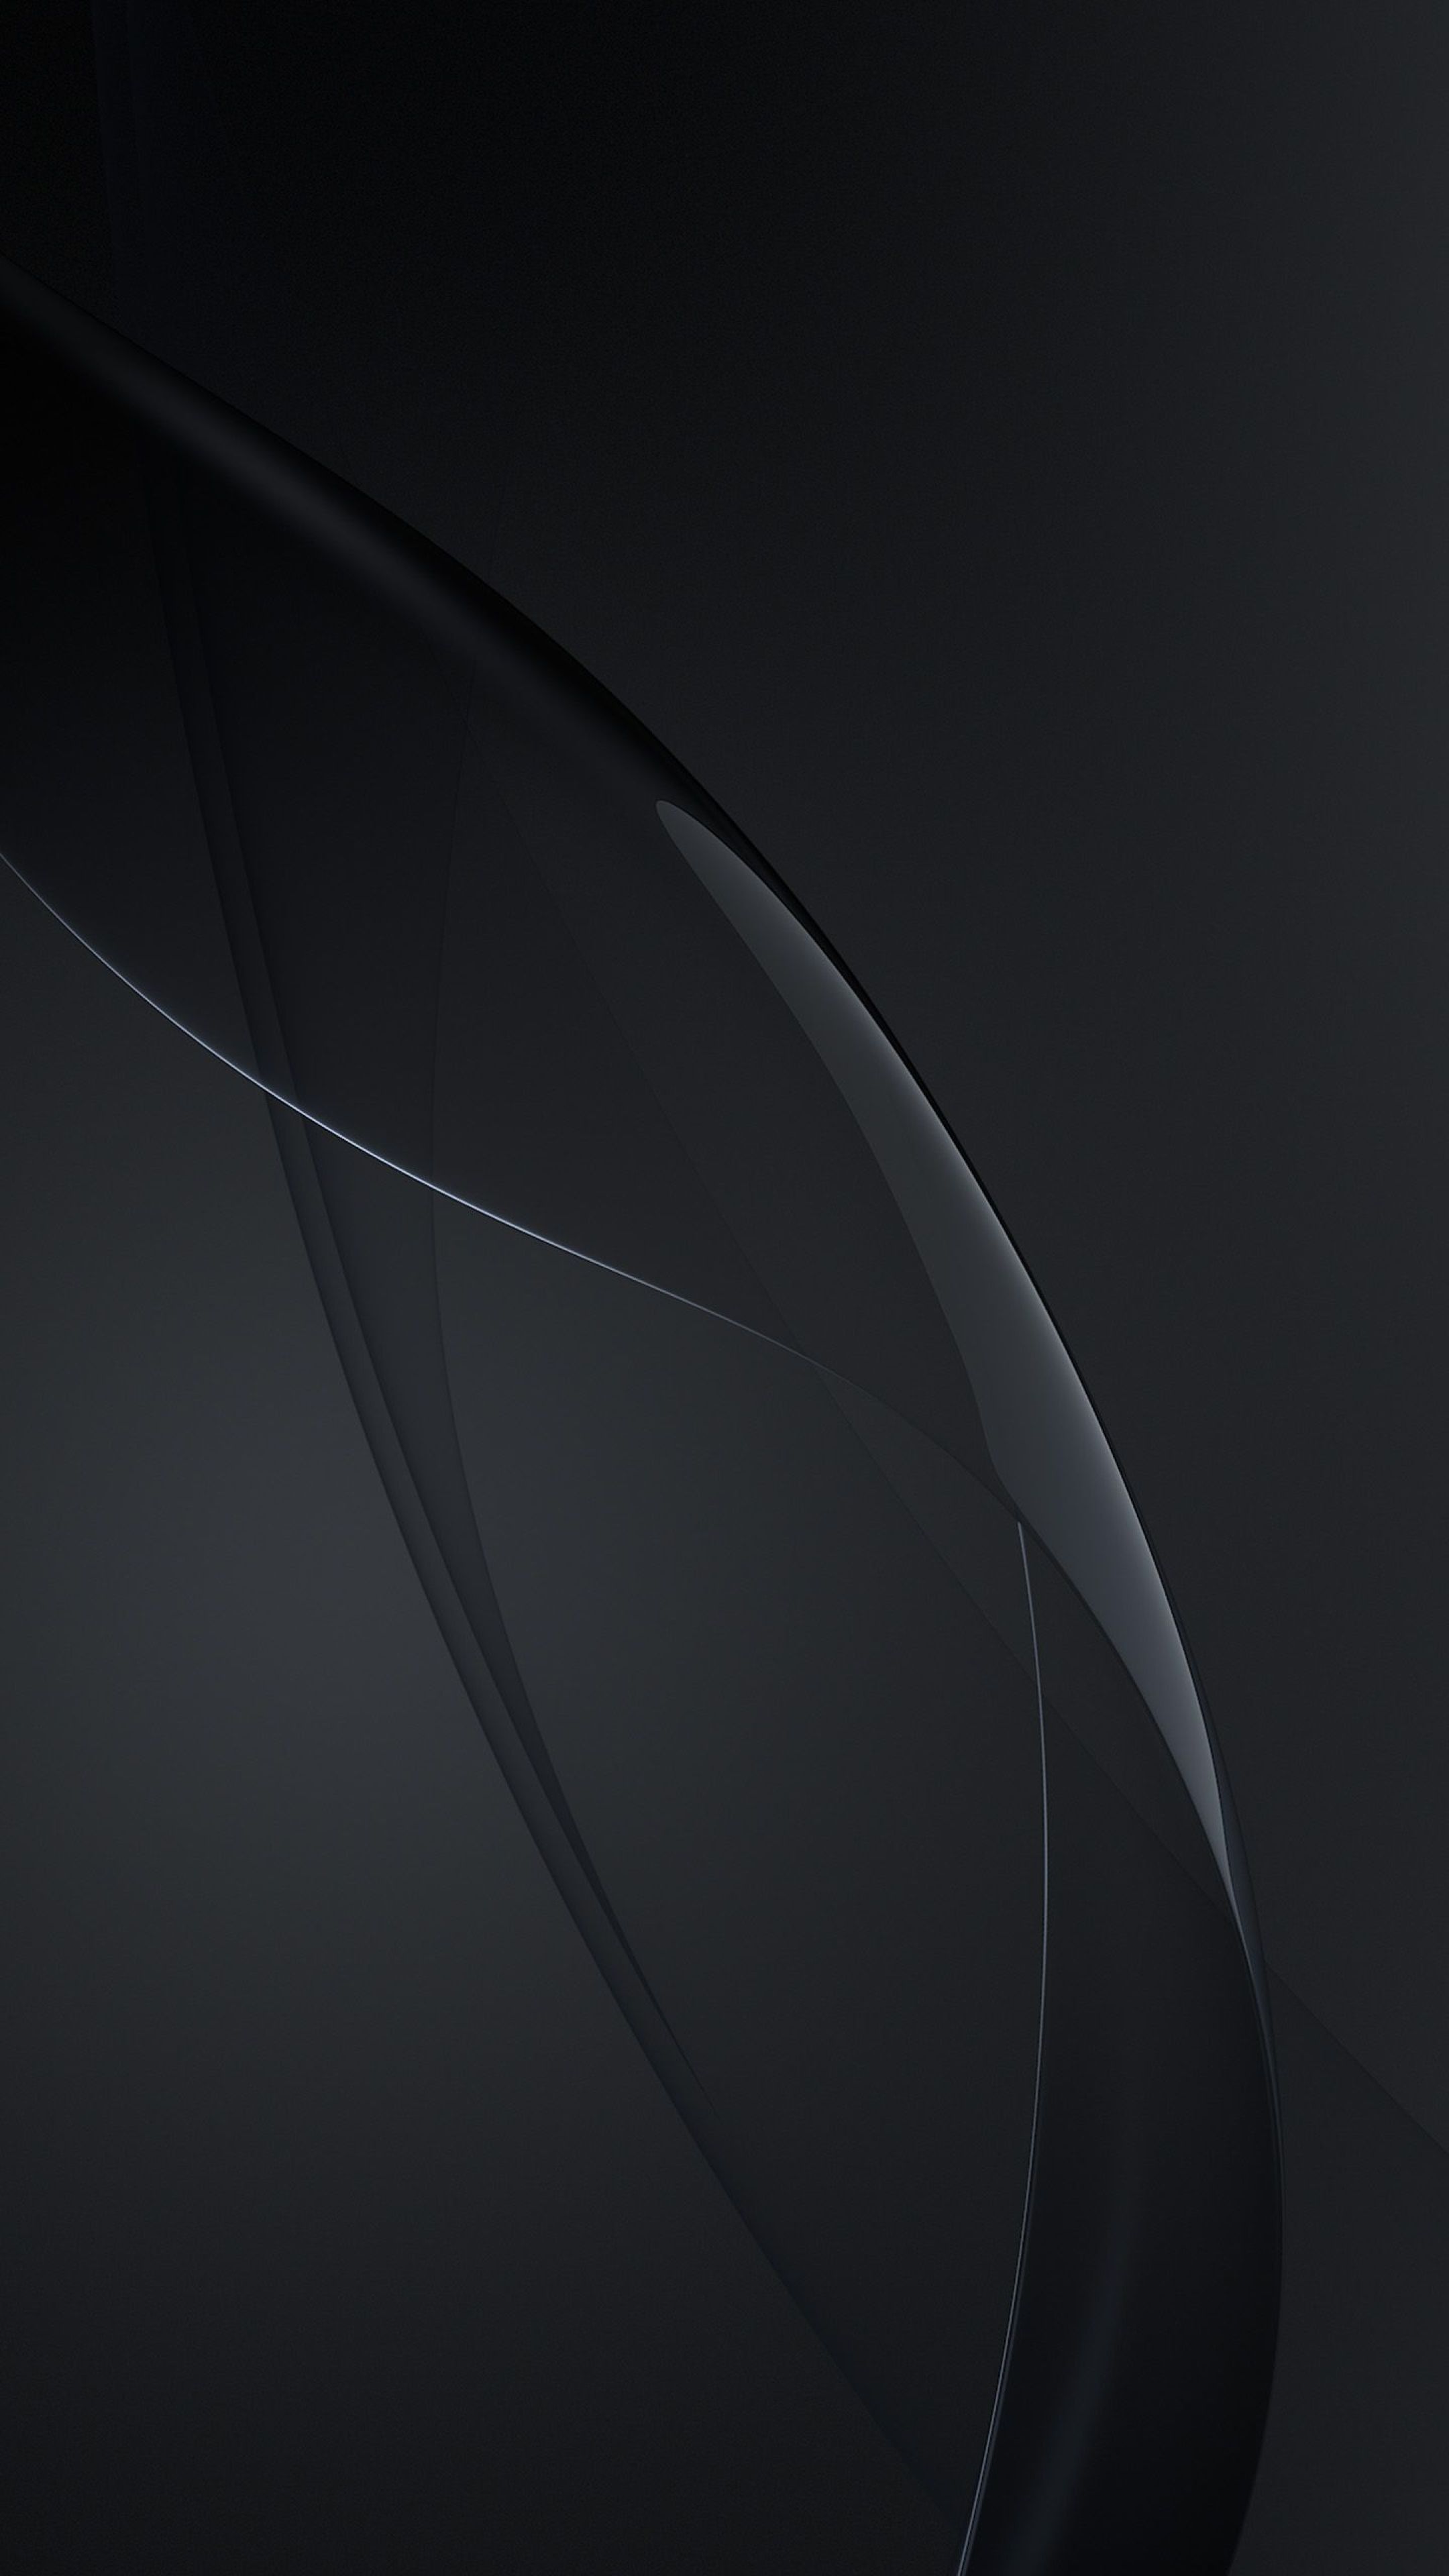 Hình nền Samsung đen: Tận hưởng cái đẹp tối giản, mộc mạc nhưng đầy ấn tượng của hình nền Samsung đen. Từ đó, bạn có thể cảm nhận được sự thanh tịnh và trầm lắng giữa cuộc sống tấp nập.